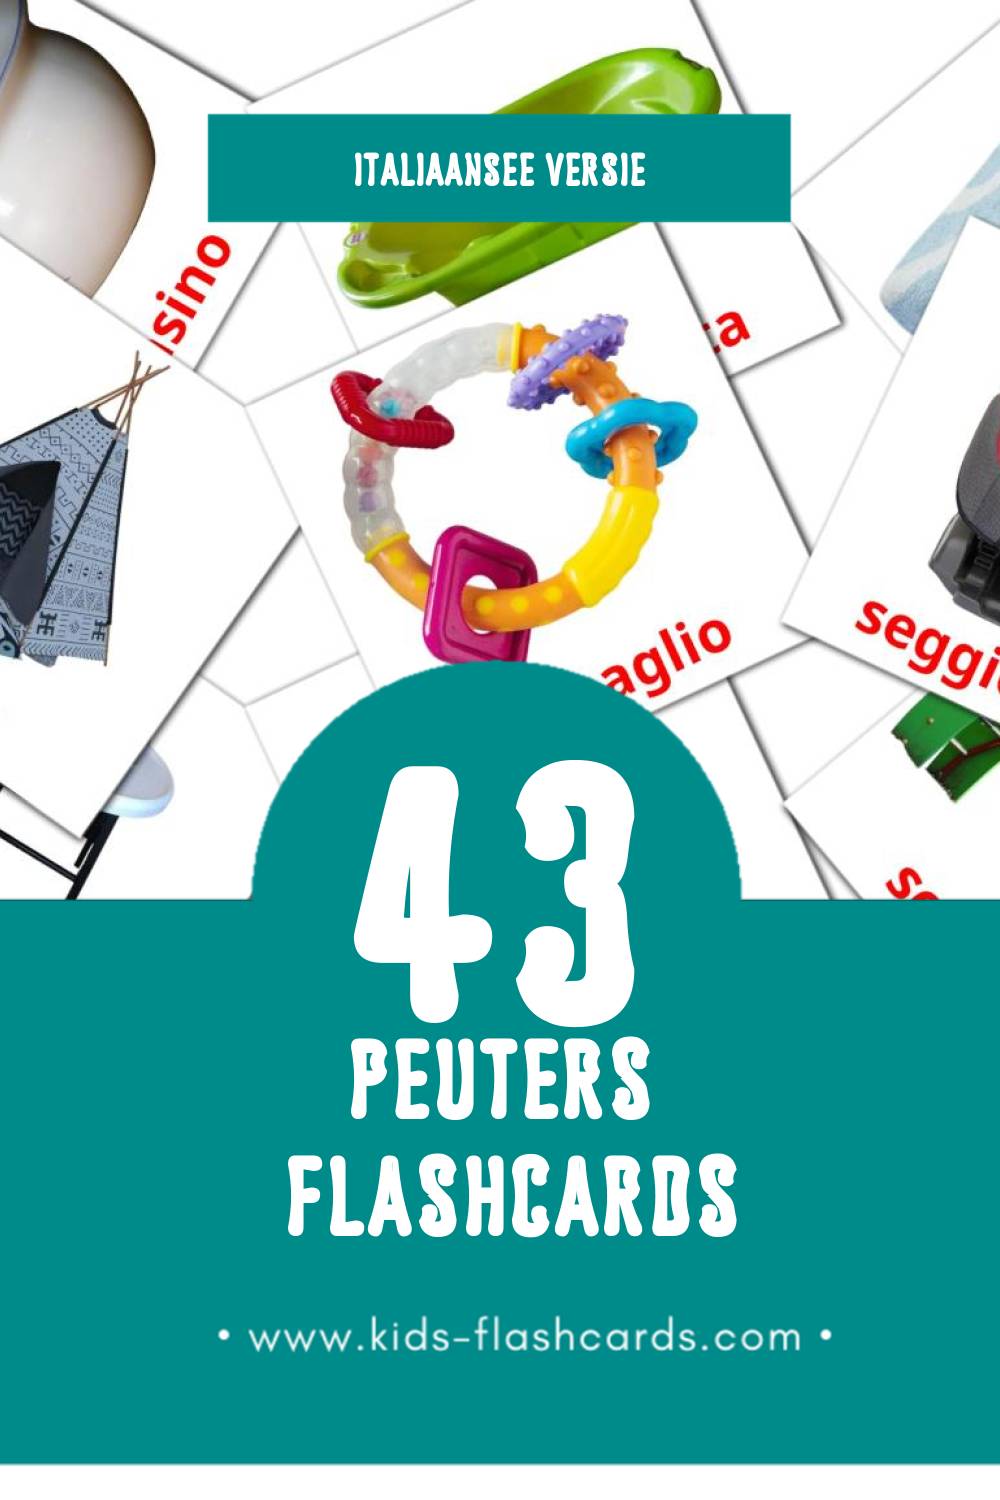 Visuele Bambino Flashcards voor Kleuters (43 kaarten in het Italiaanse)